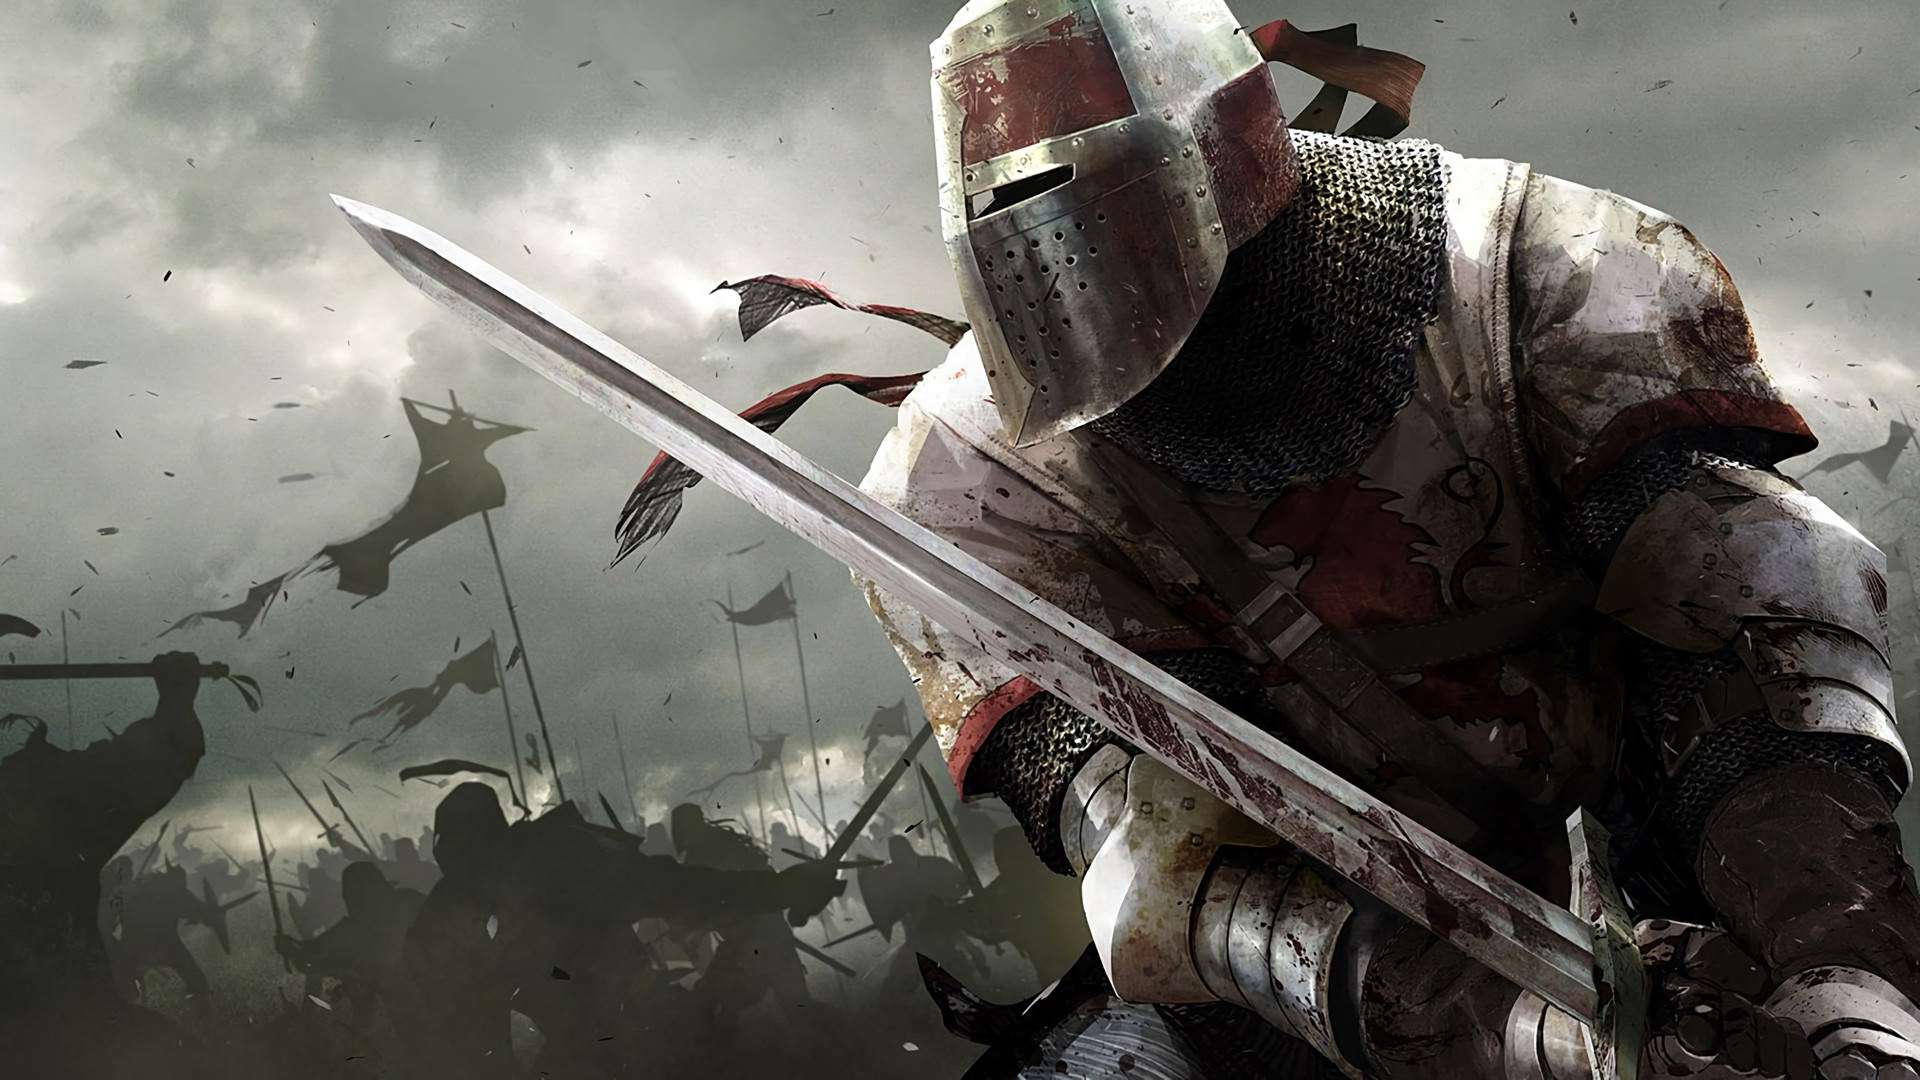 Medieval Knight’s Armor Wallpaper